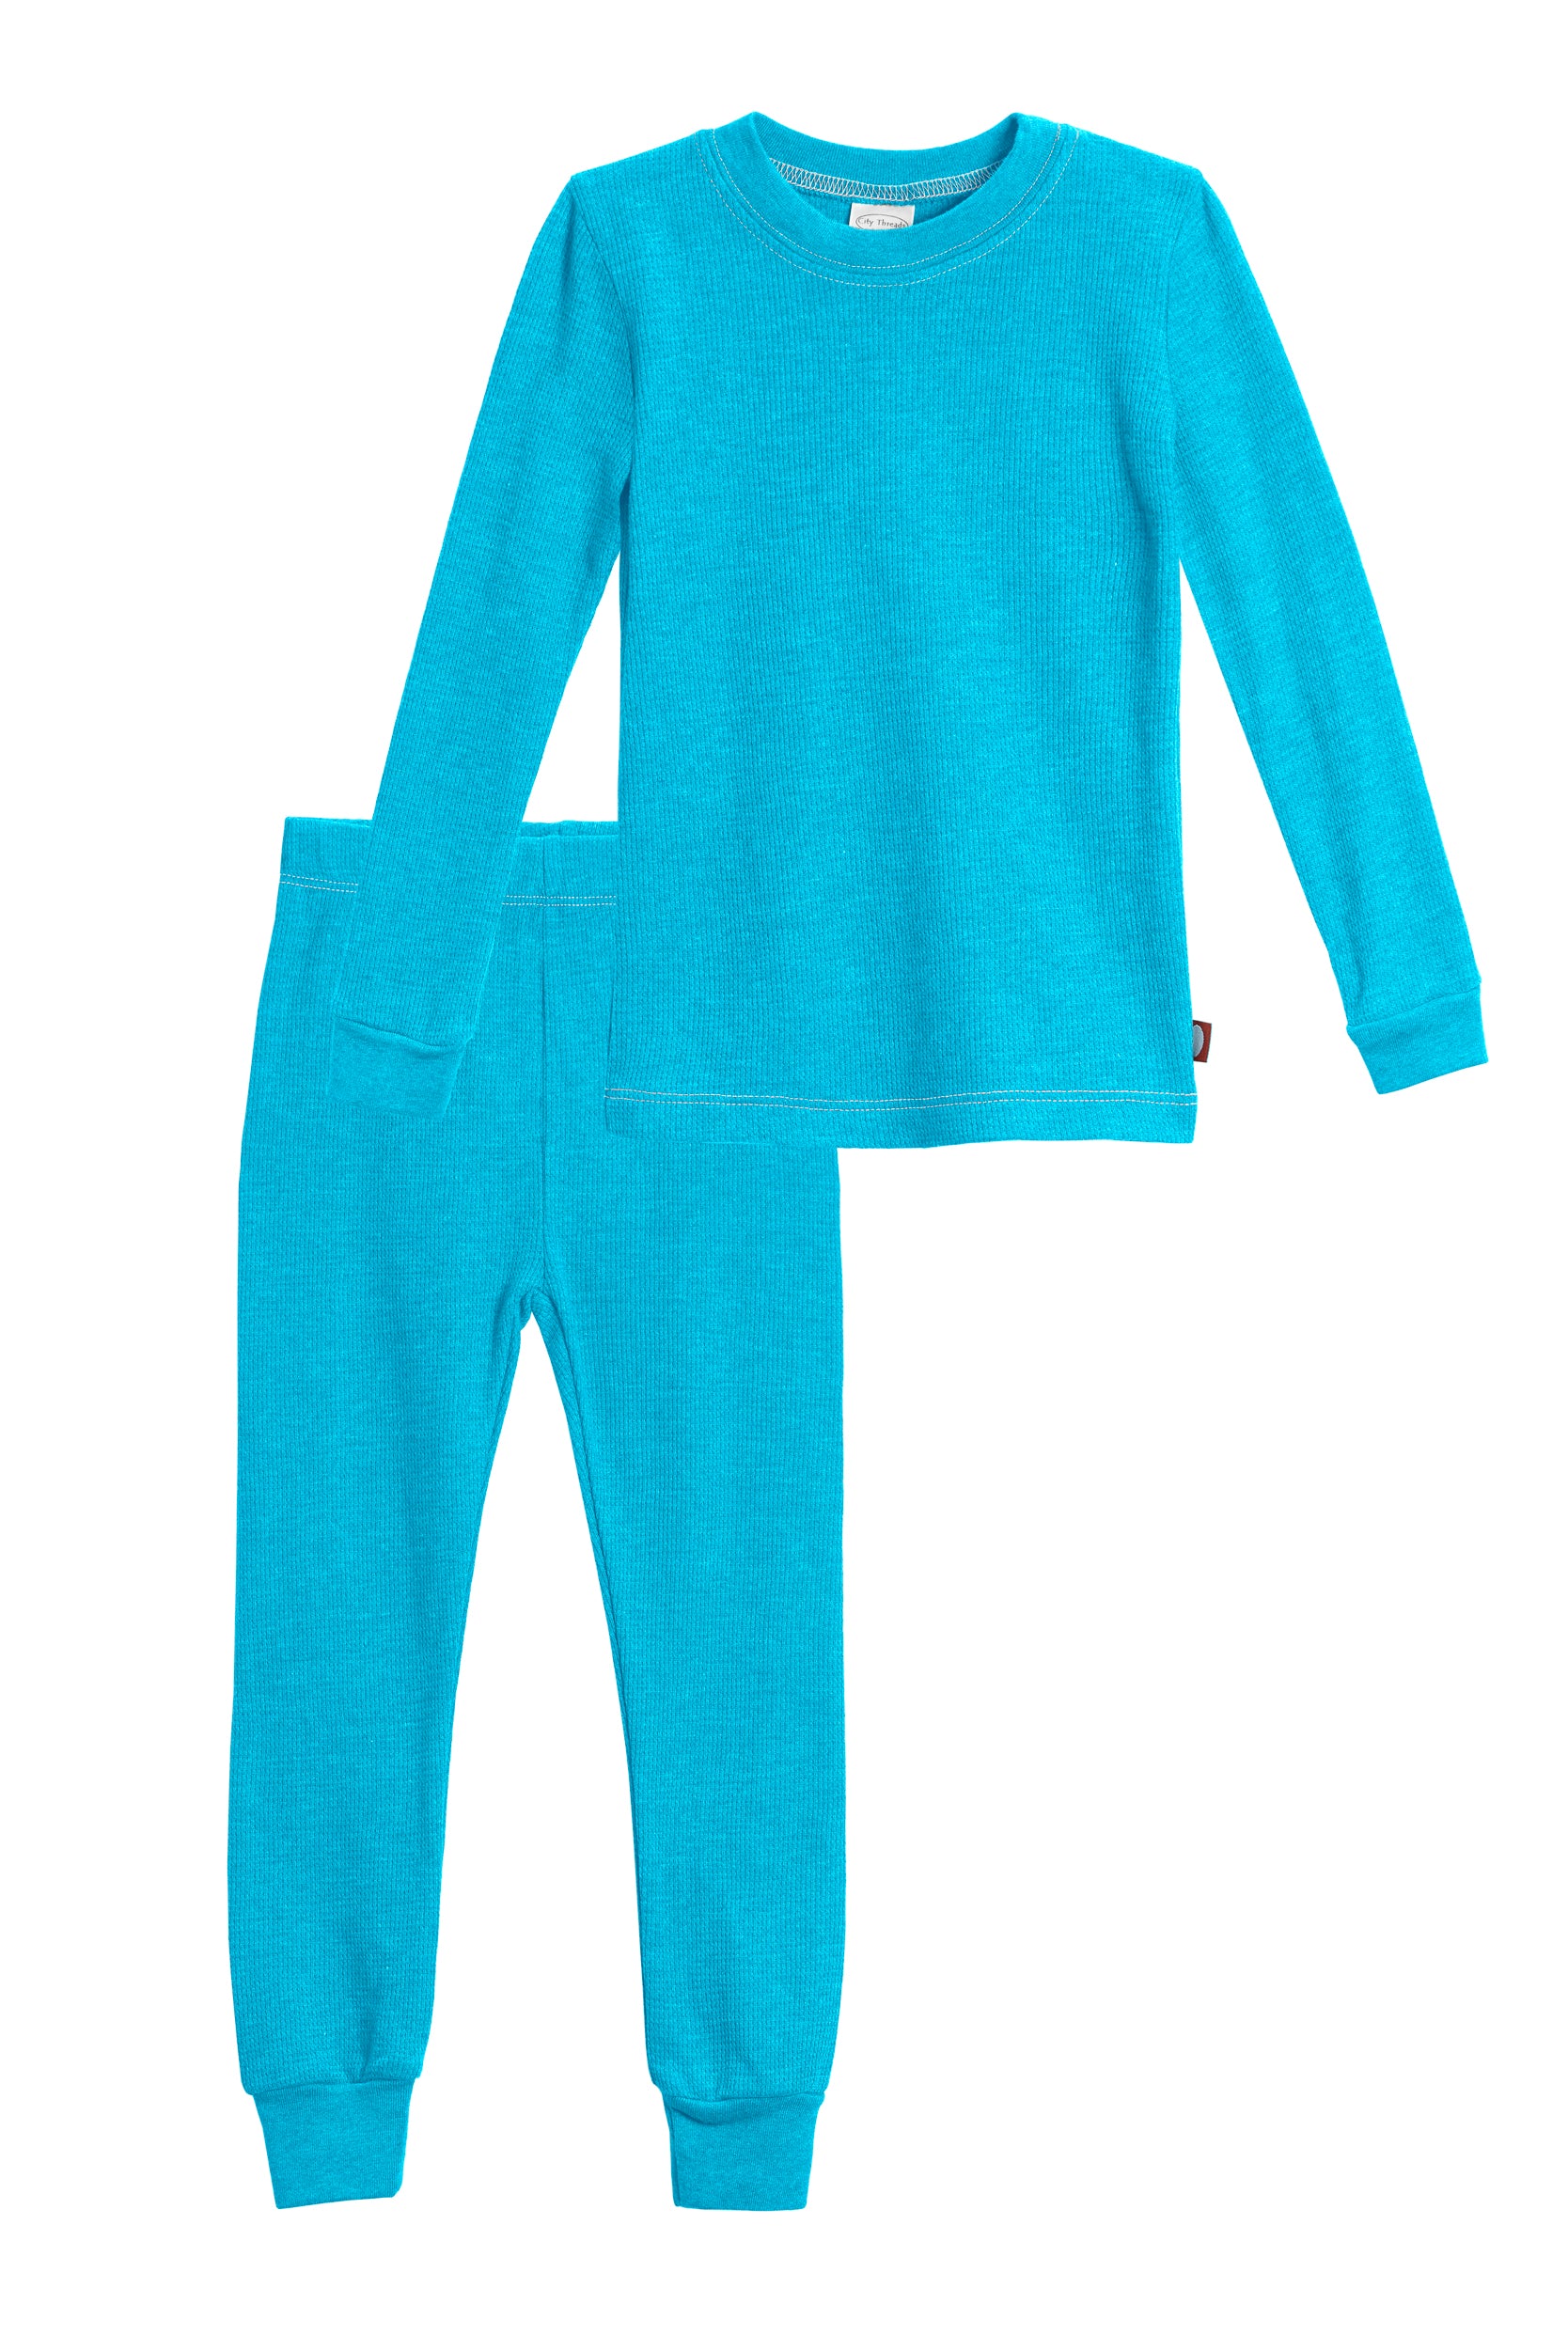 Two-Piece Suit Children's Warm Set Clothes Boys Girls Long Johns Pajamas Kids  Thermal Underwear Solid Colors Color: purple, Kid Size: 130cm